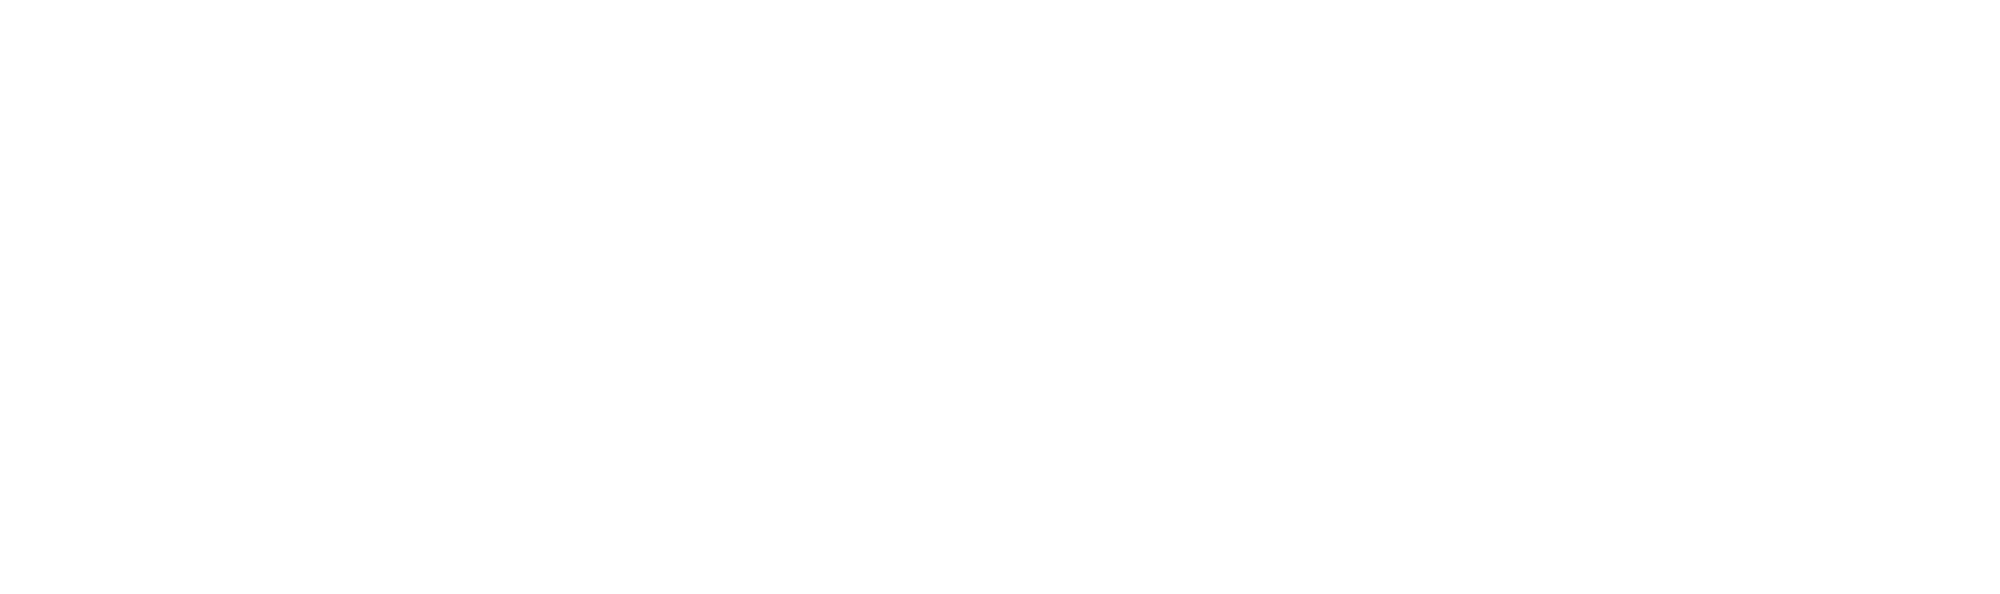 nasa logo black and white png